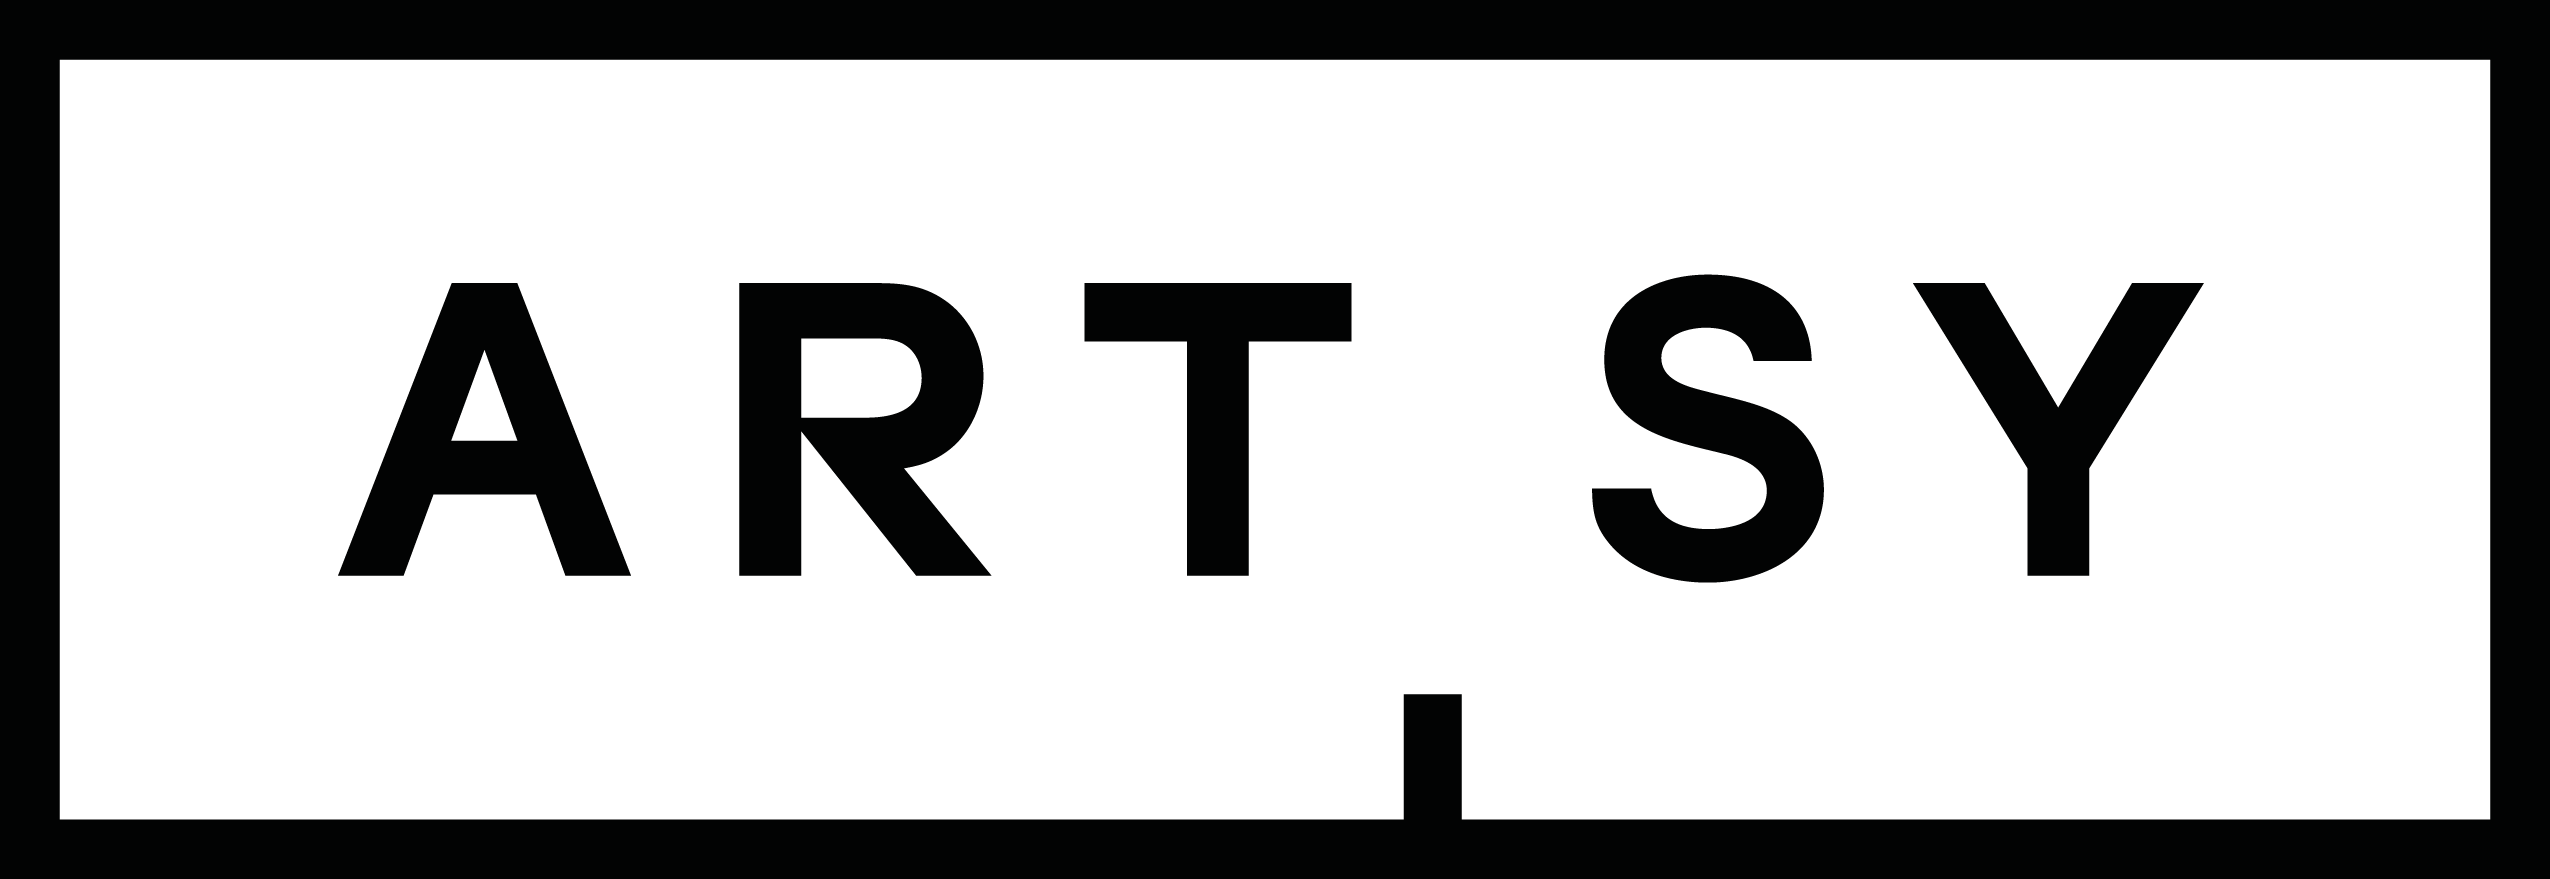 Artsy Logo - artsy-logo - ERICA PRINCE